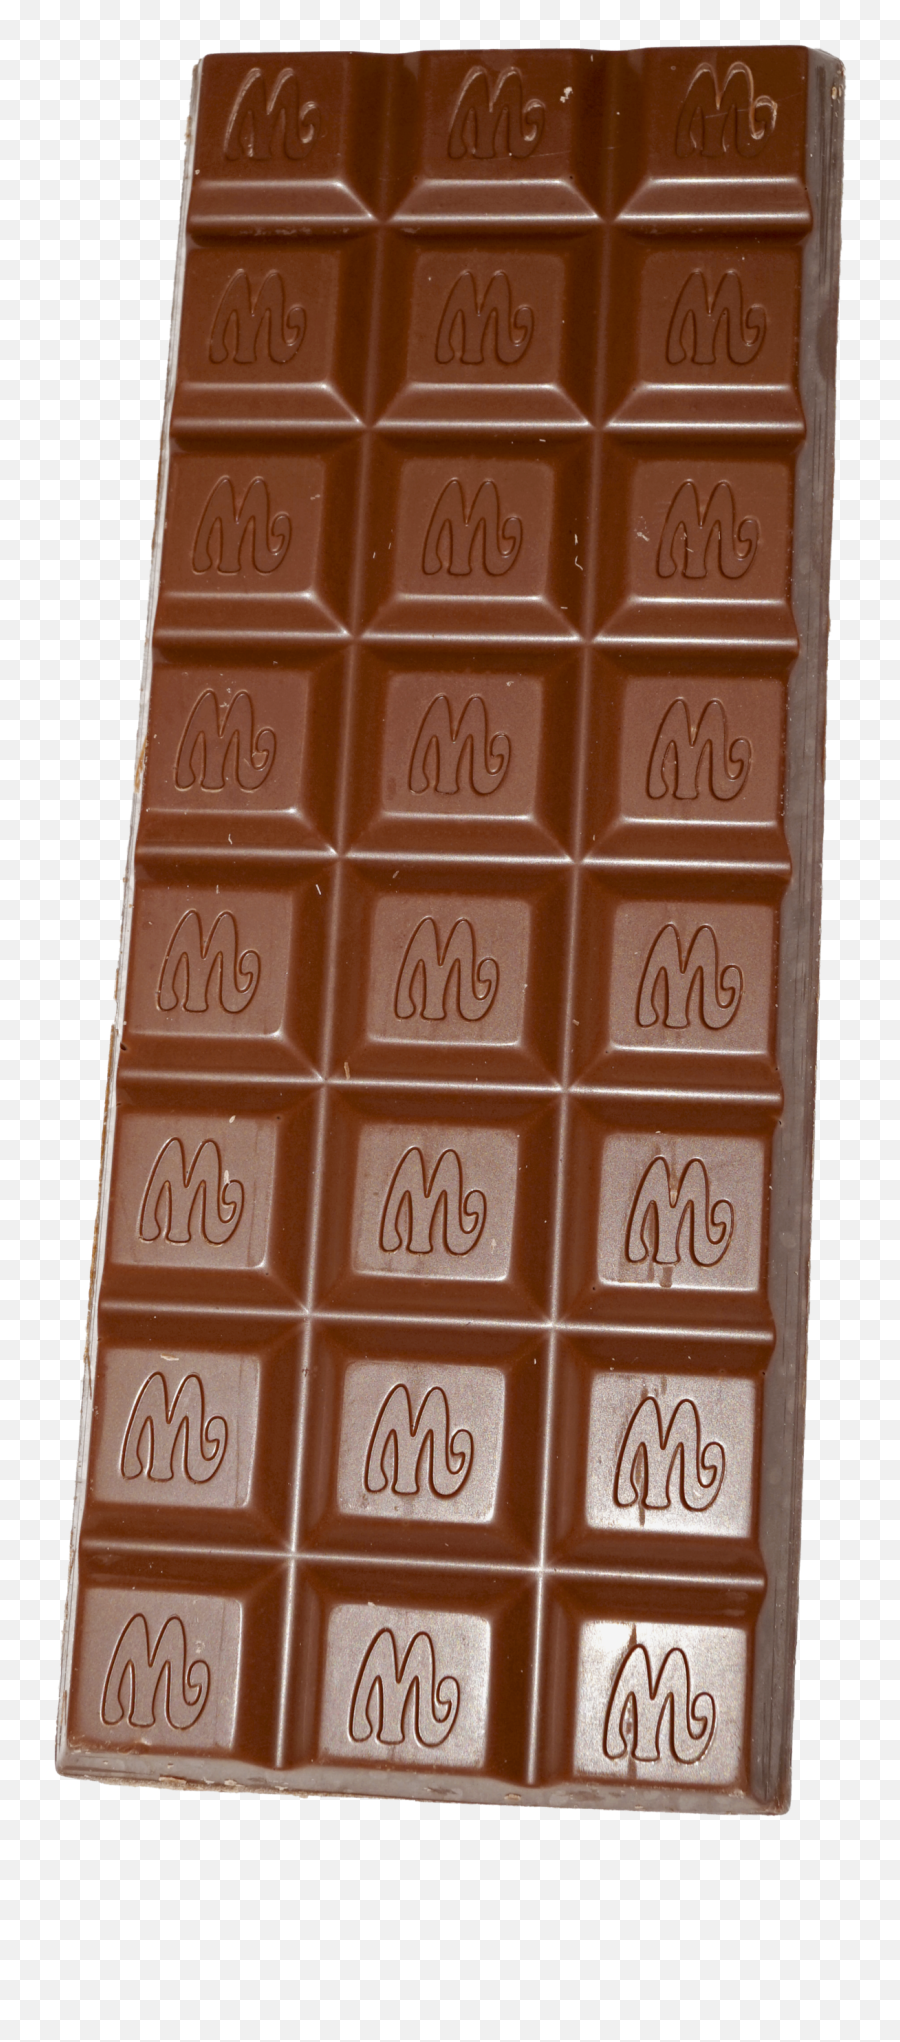 Marabou Chocolate - Chocolate Png,Chocolate Png